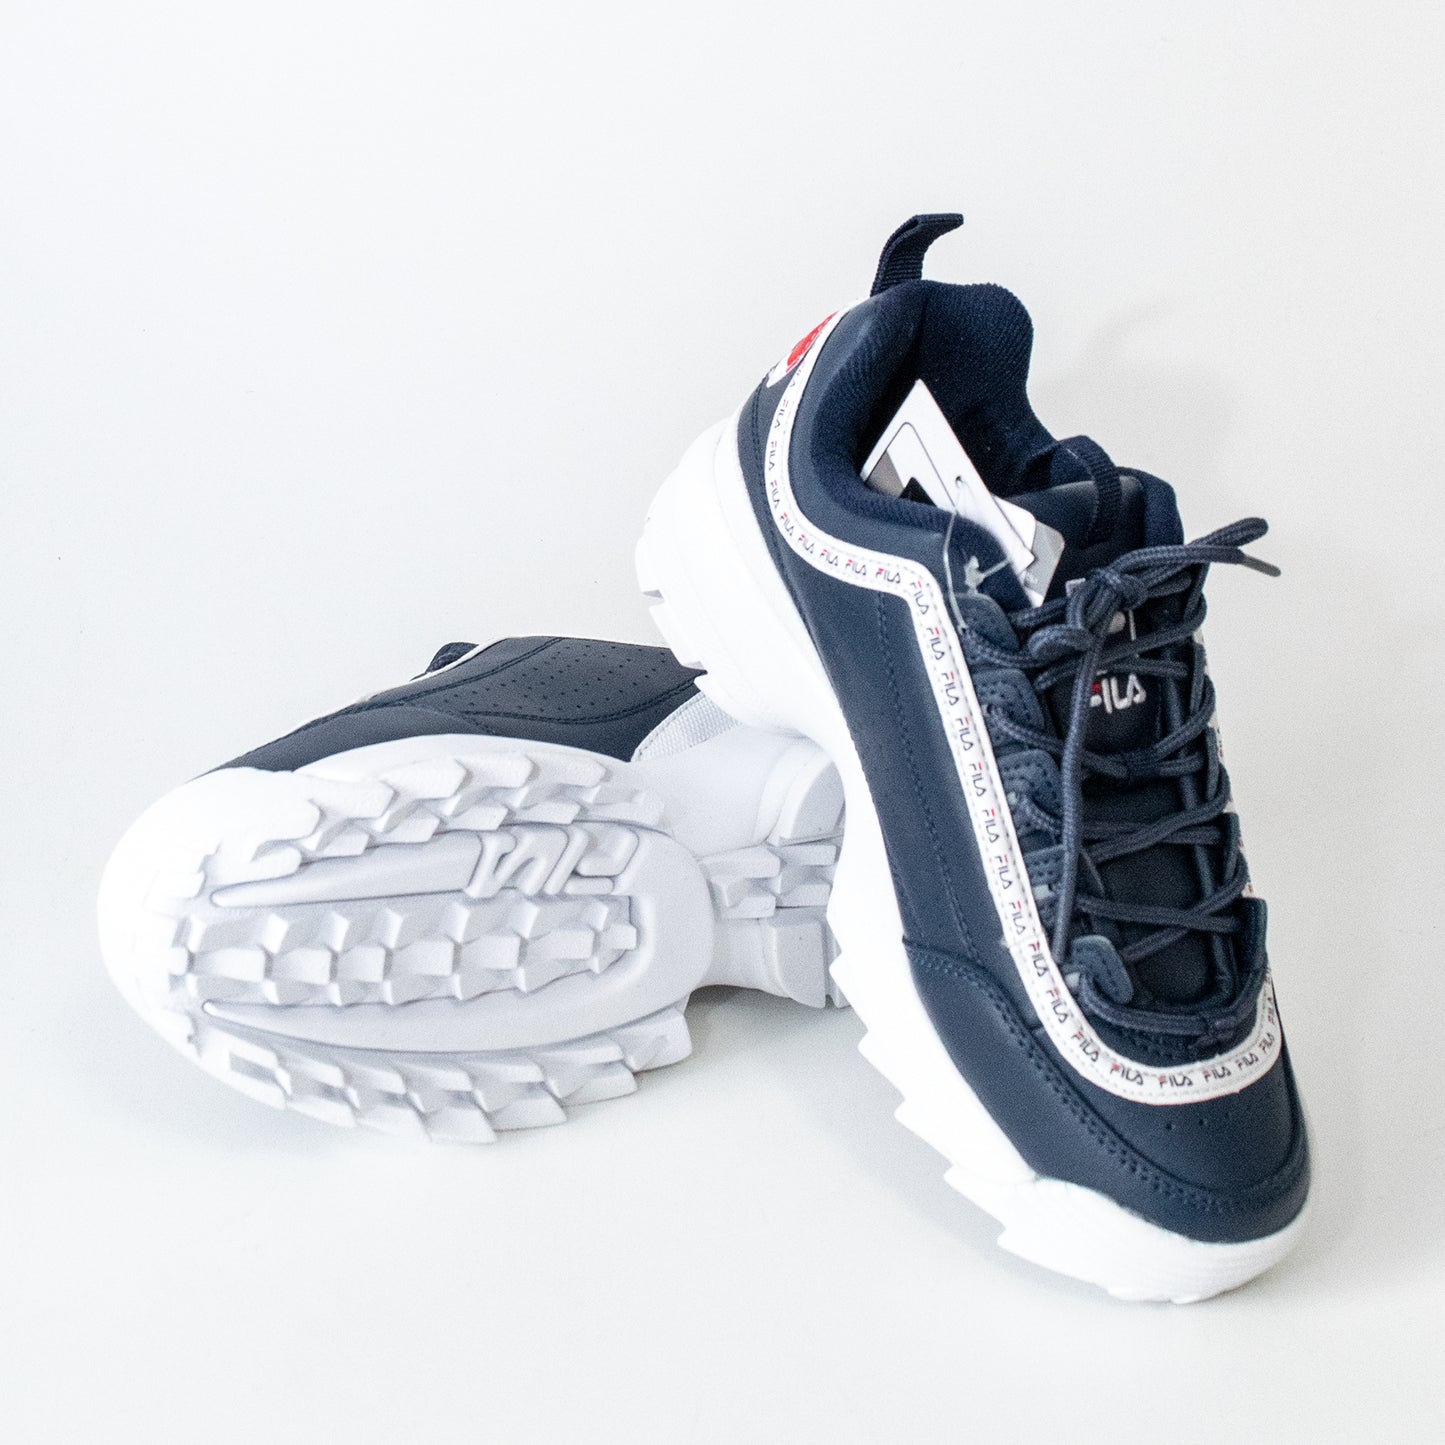 FILA DISRUPTOR PREMIUM REPEAT Disruptor platform sneakers in NAVY